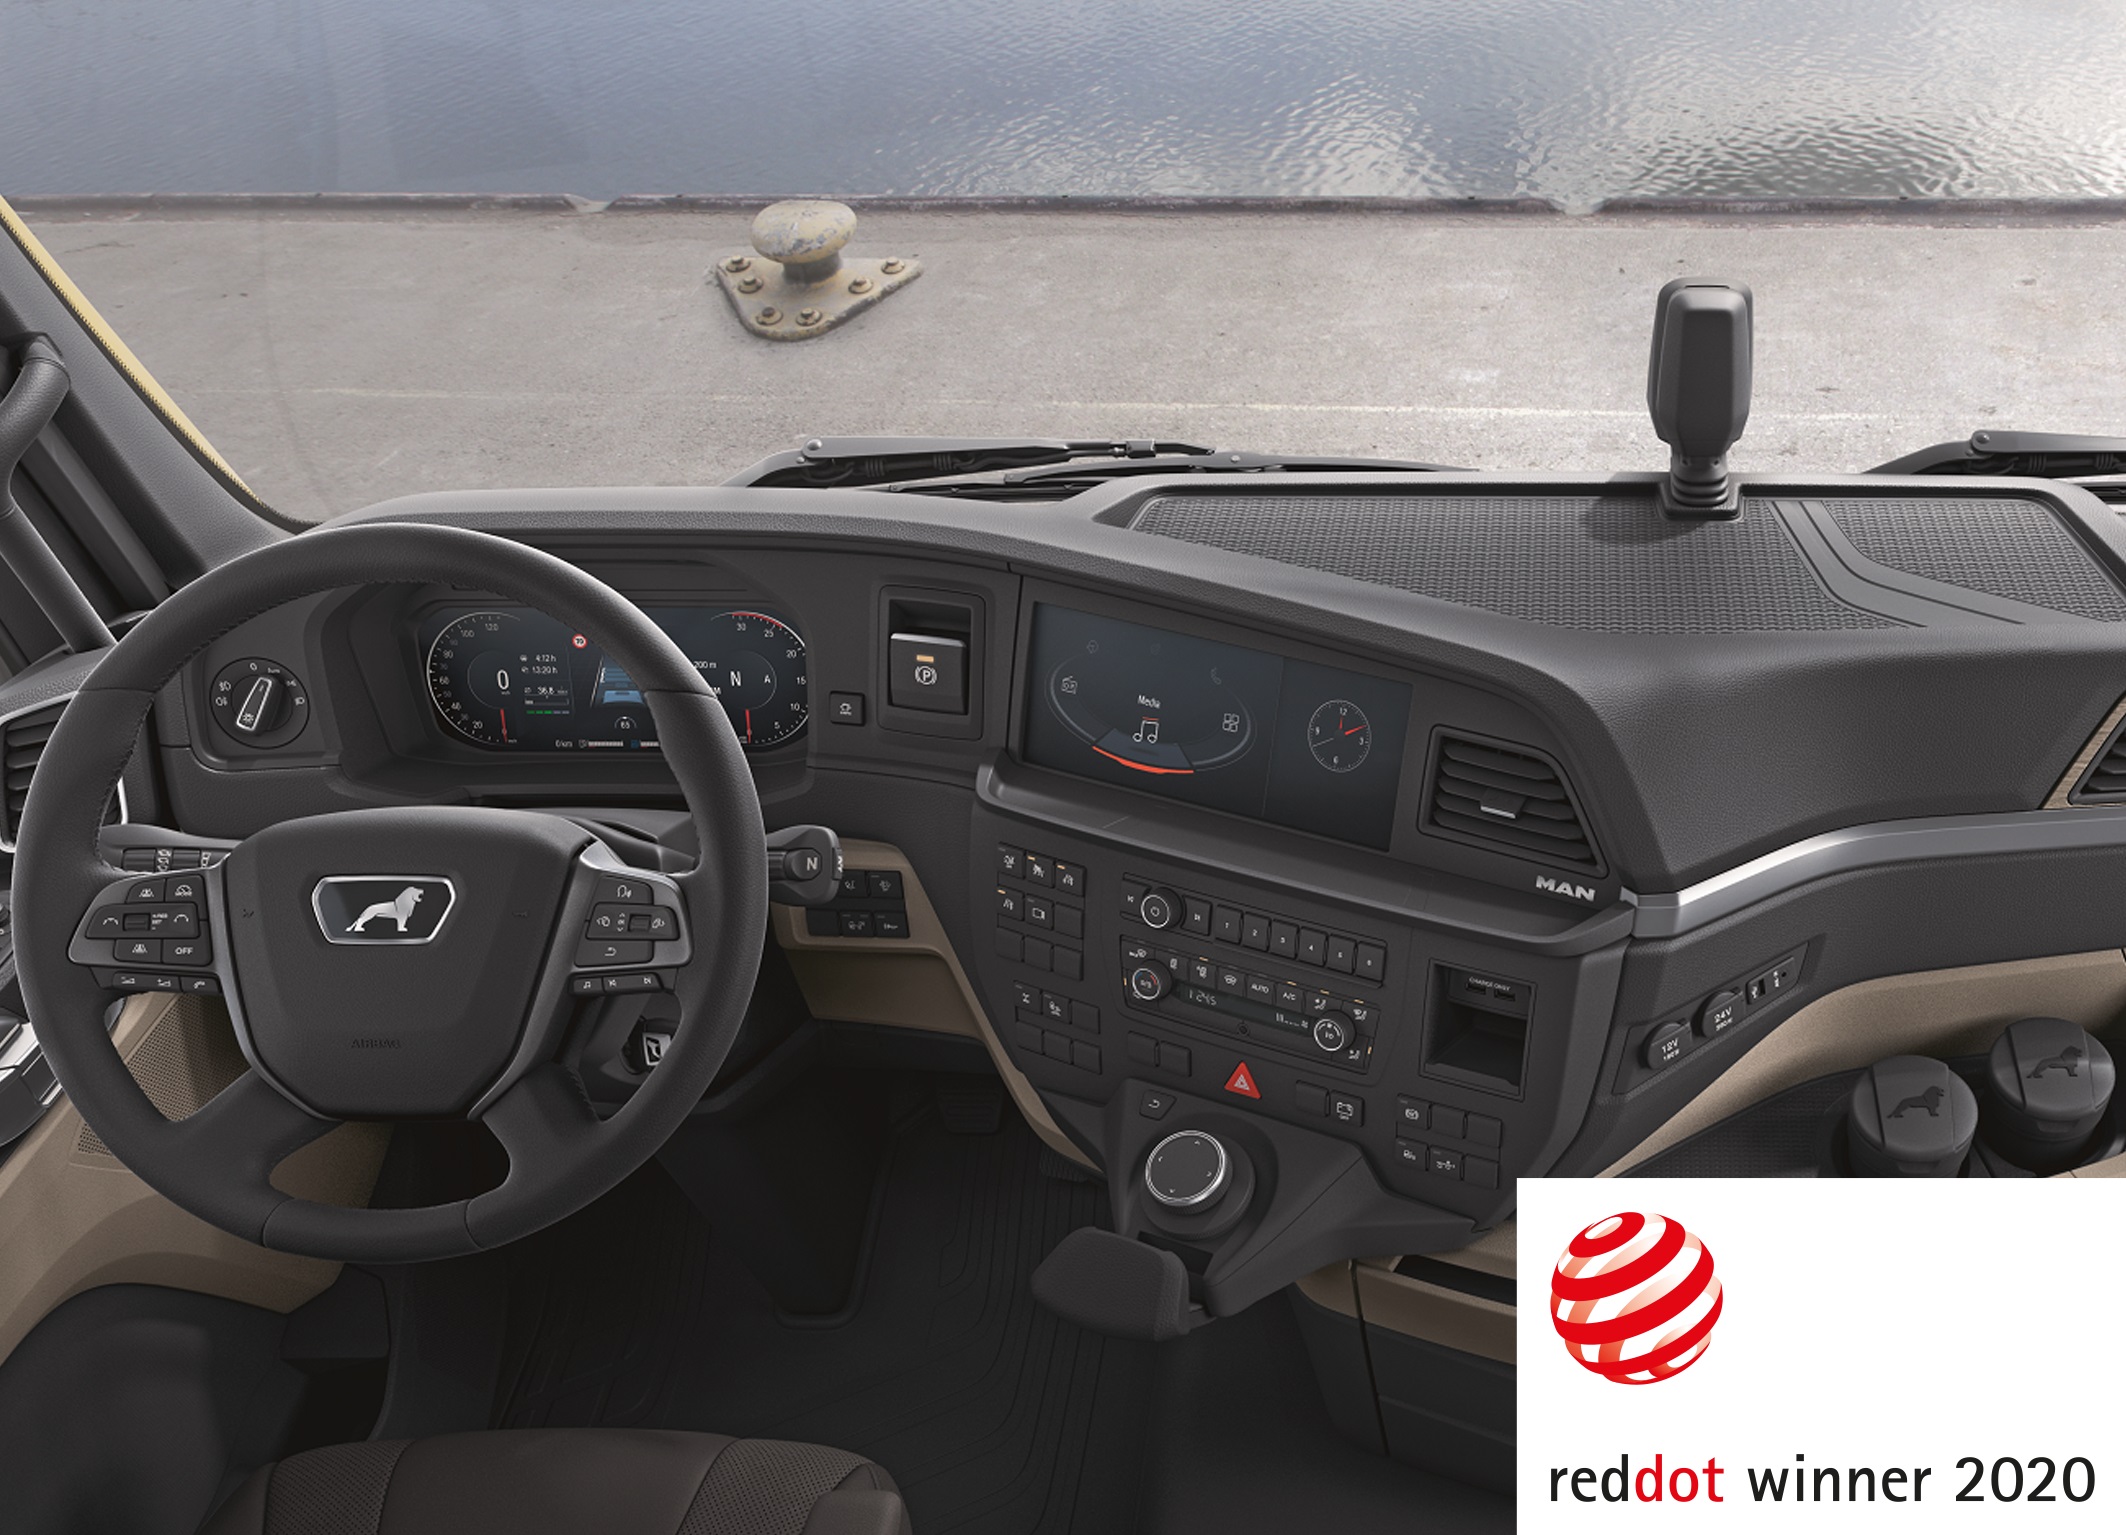 Le poste de conduite de la nouvelle génération de camions MAN remporte le Red Dot Award